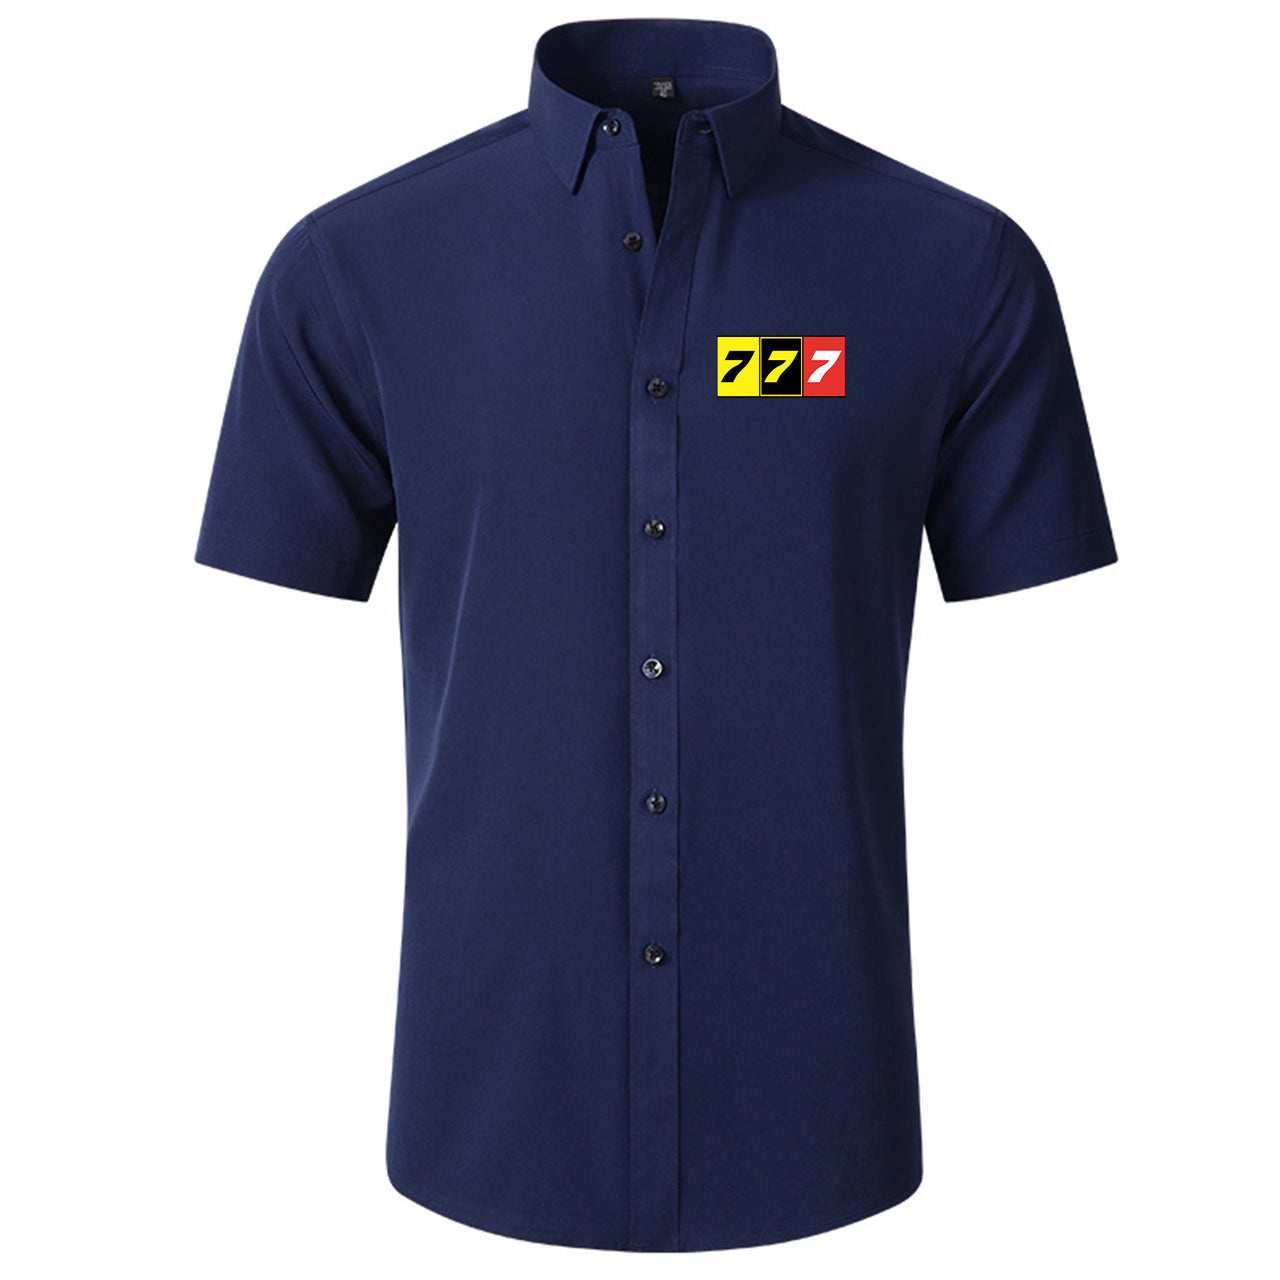 Flat Colourful 777 Designed Short Sleeve Shirts